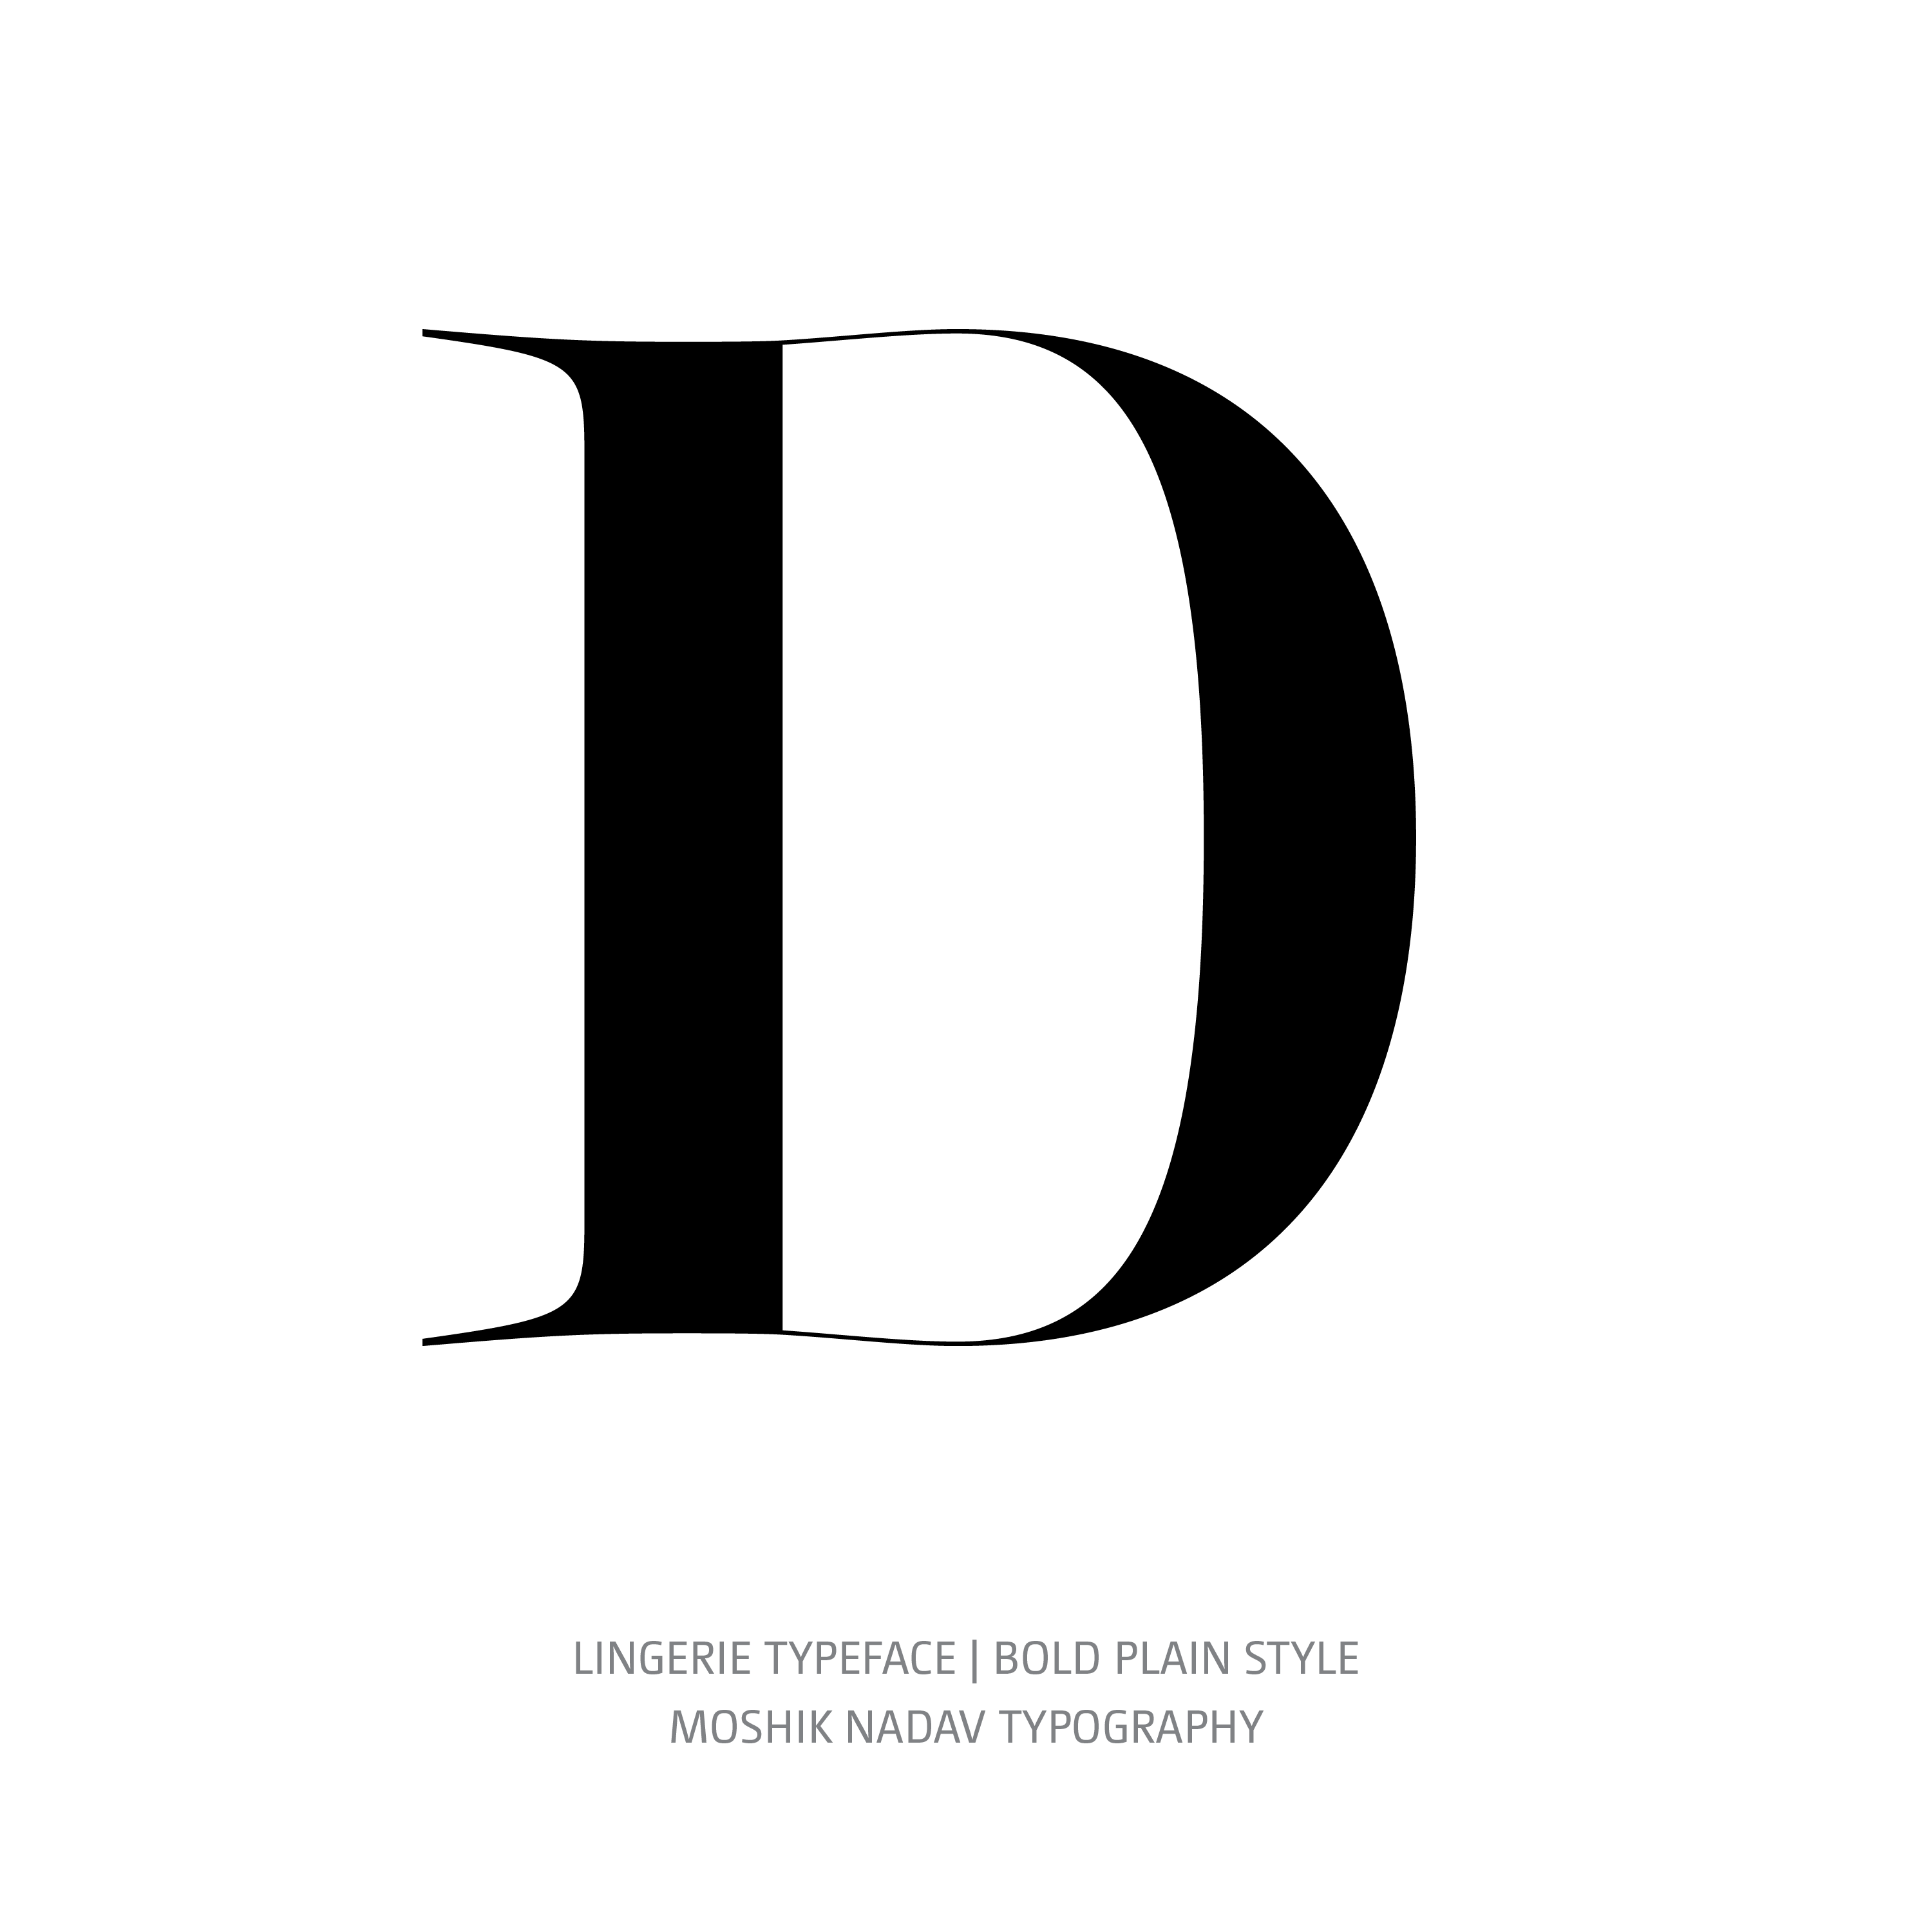 Lingerie Typeface Bold Plain D